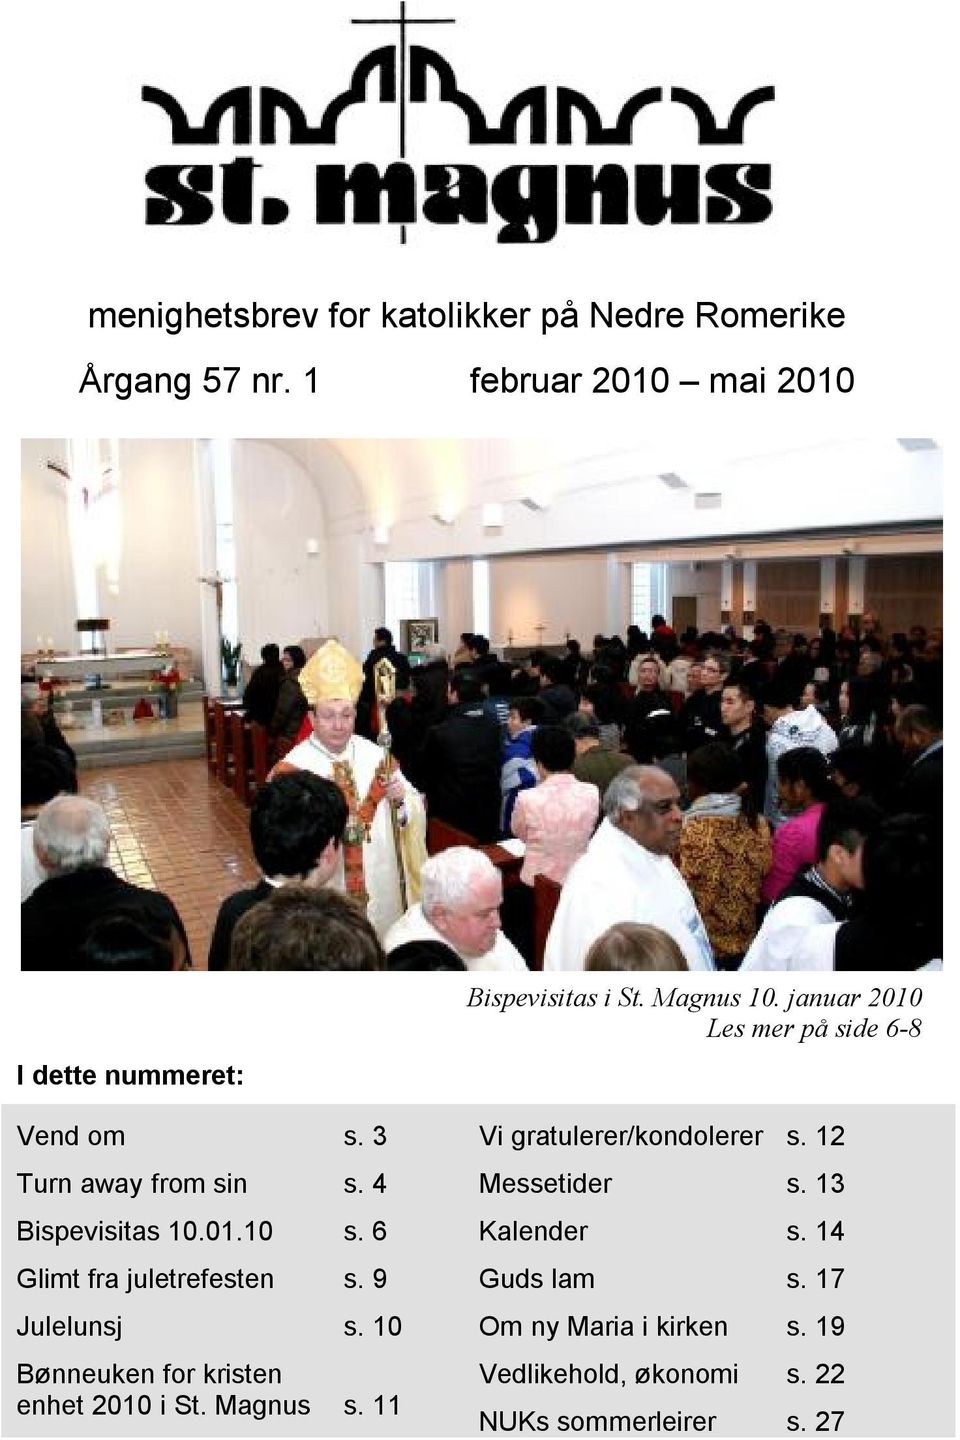 10 Bønneuken for kristen enhet 2010 i St. Magnus s. 11 Bispevisitas i St. Magnus 10.